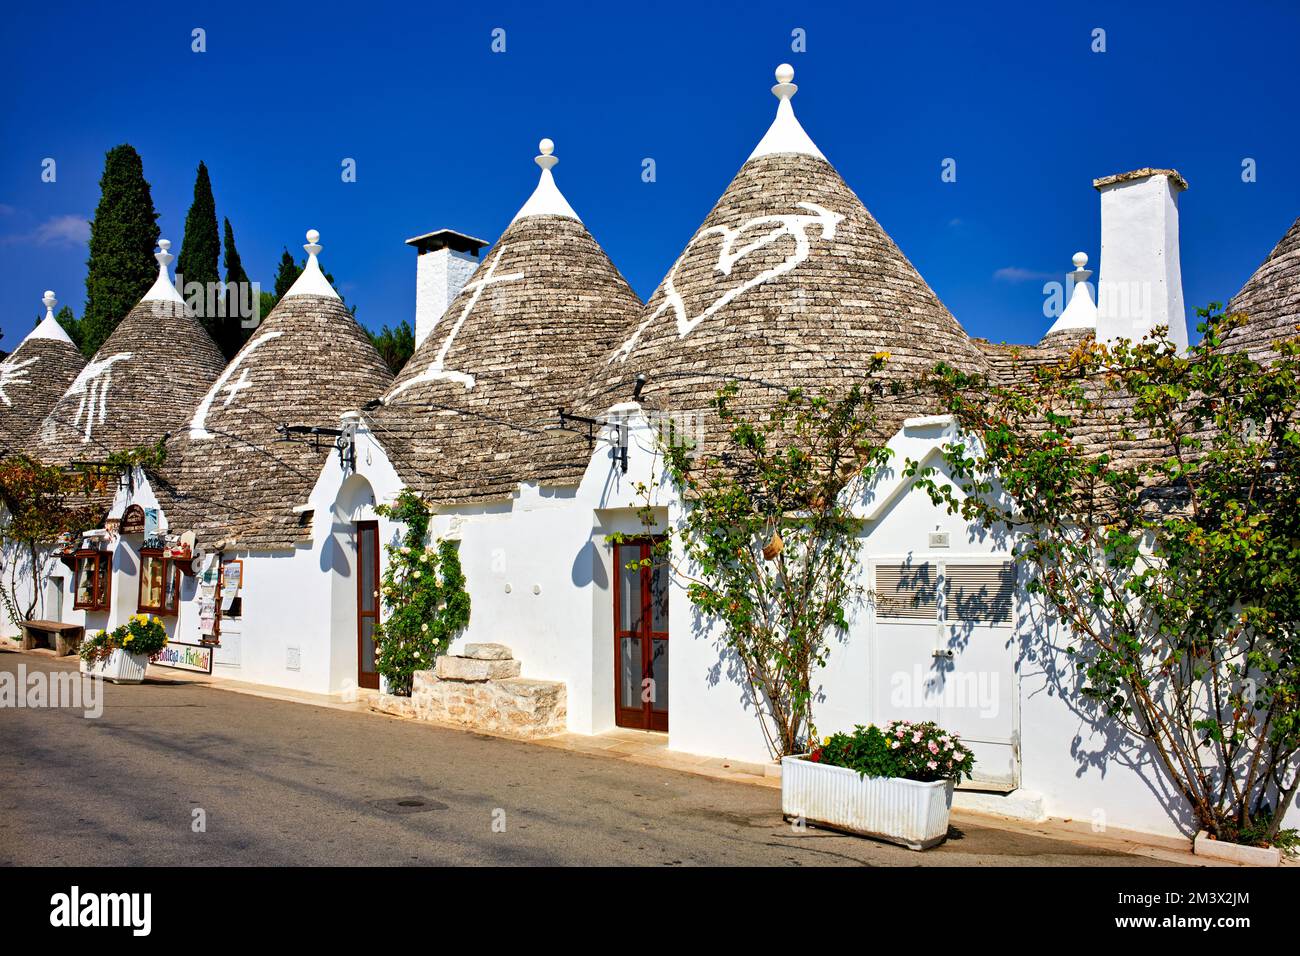 Puglia Puglia Italia. Alberobello. Trulli: Capanne in pietra a secco pugliesi tradizionali con tetto conico. Foto Stock